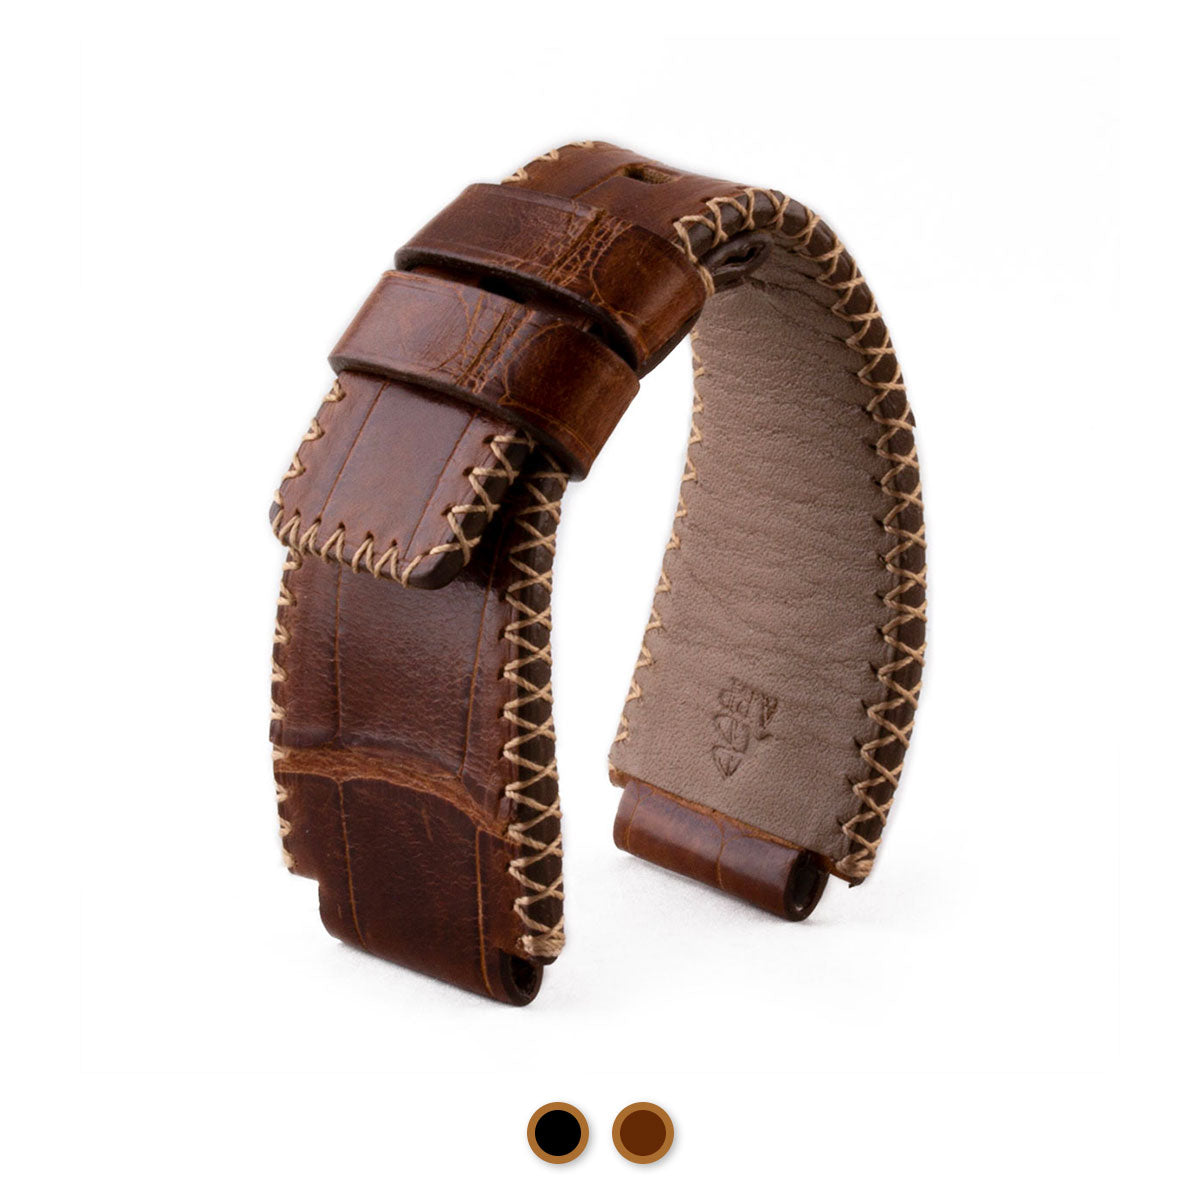 Bell & Ross - Bracelet-montre cuir - Alligator couture tribale (noir / marron, marron / marron) - watch band leather strap - ABP Concept -